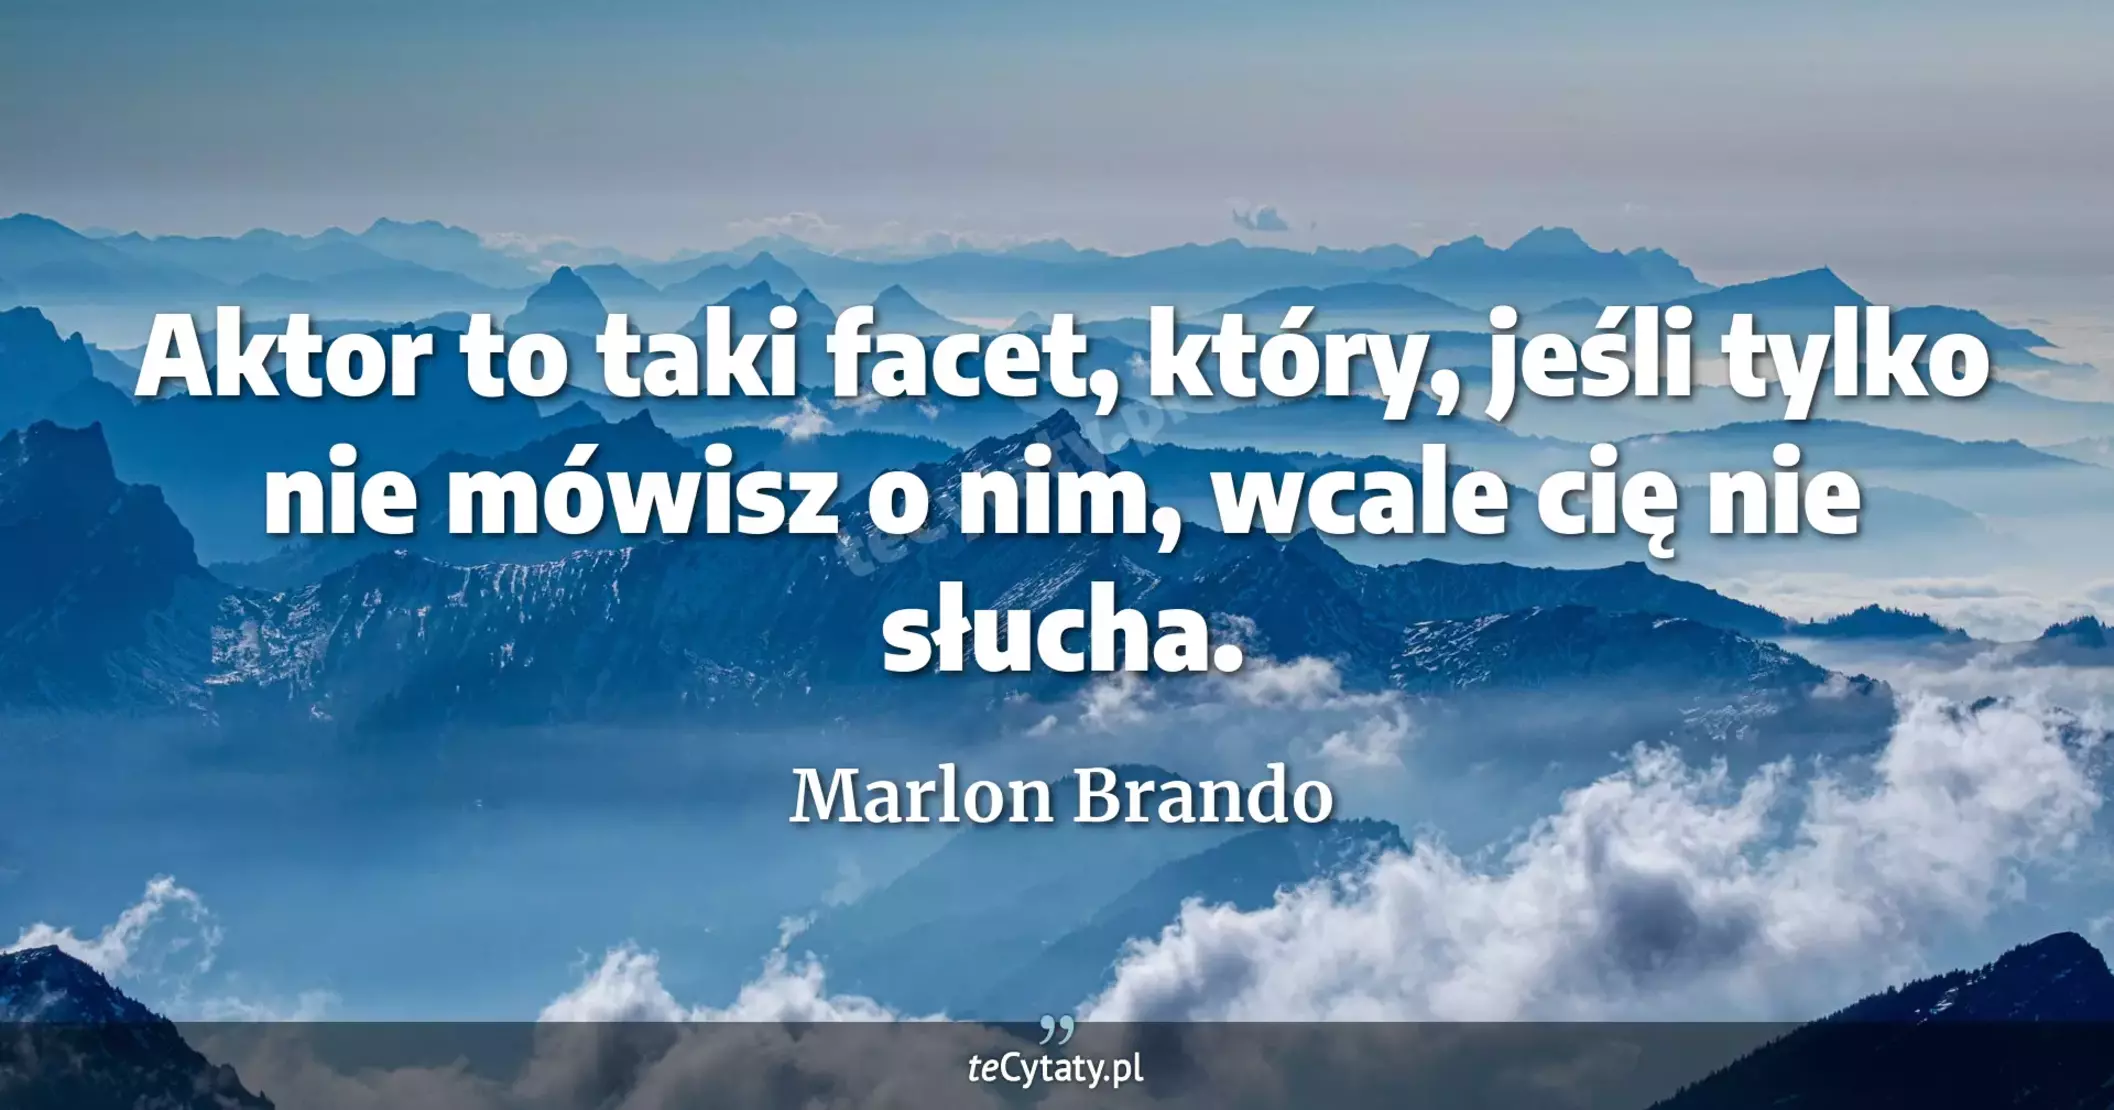 Aktor to taki facet, który, jeśli tylko nie mówisz o nim, wcale cię nie słucha. - Marlon Brando